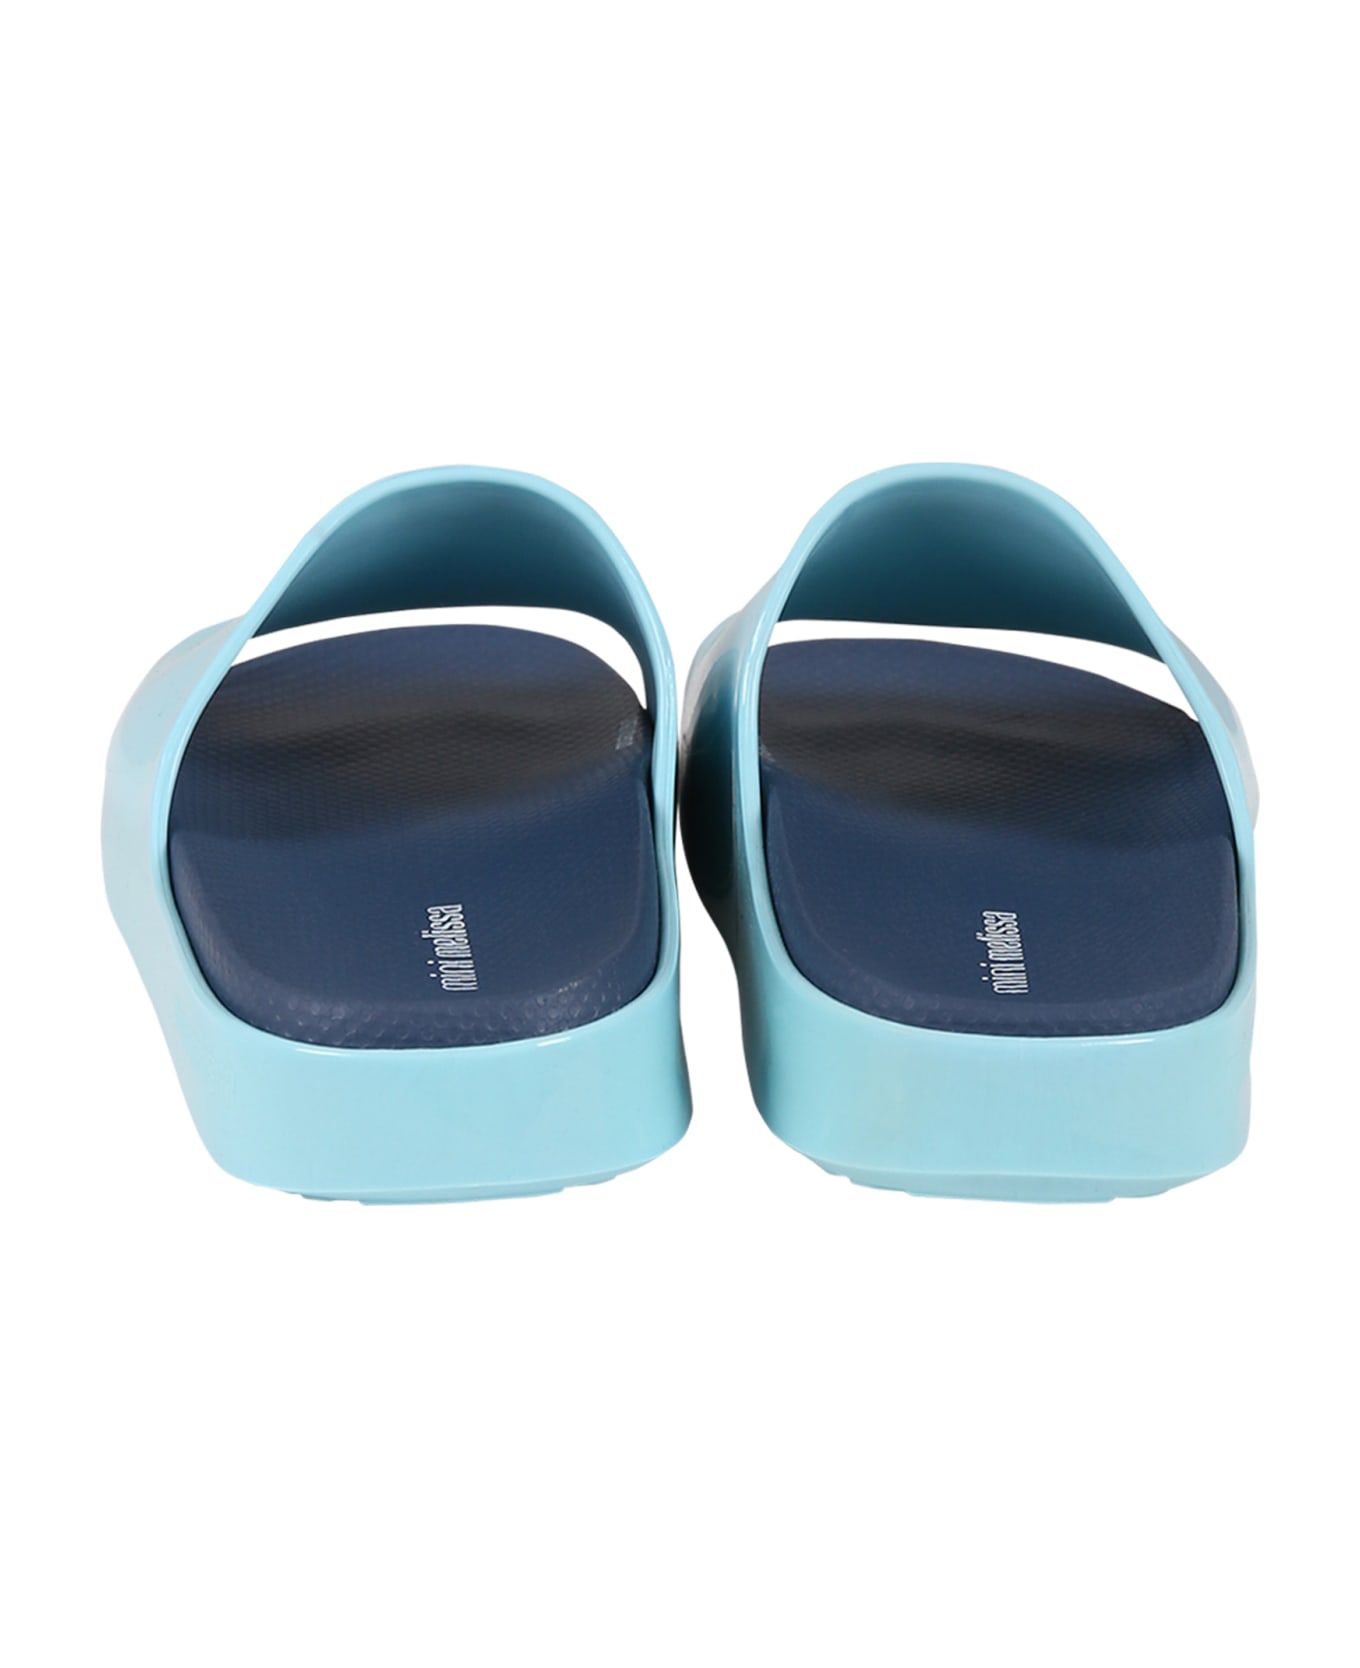 Melissa Light Blue Sandals For Girl With Logo - Light Blue